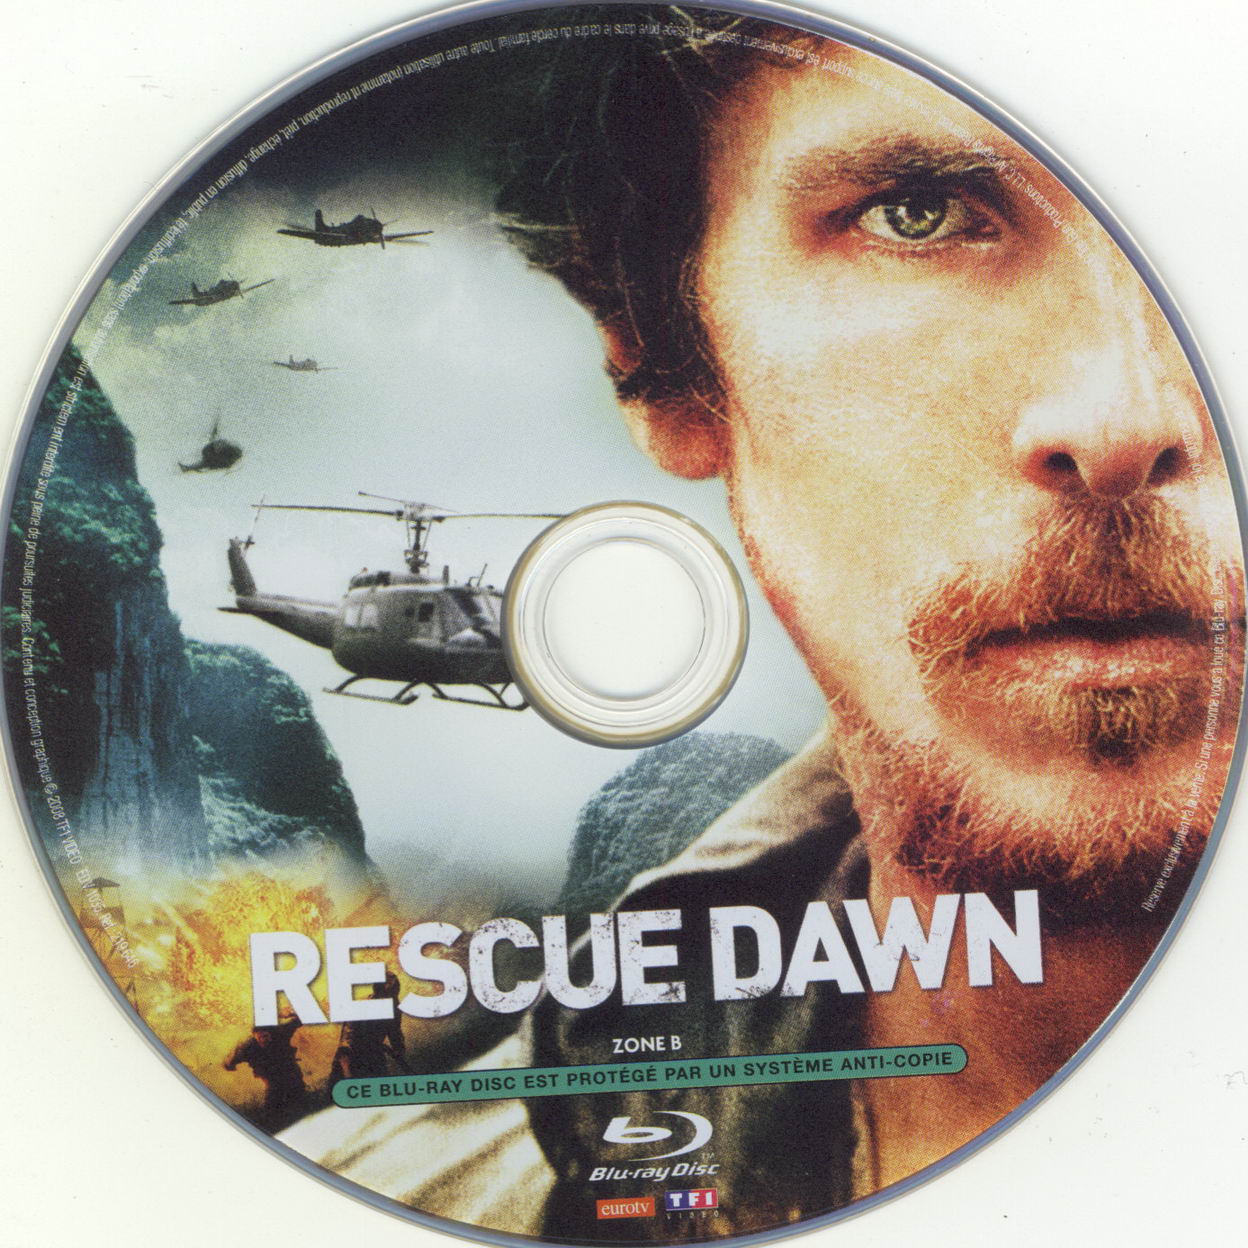 Rescue dawn (BLU-RAY)